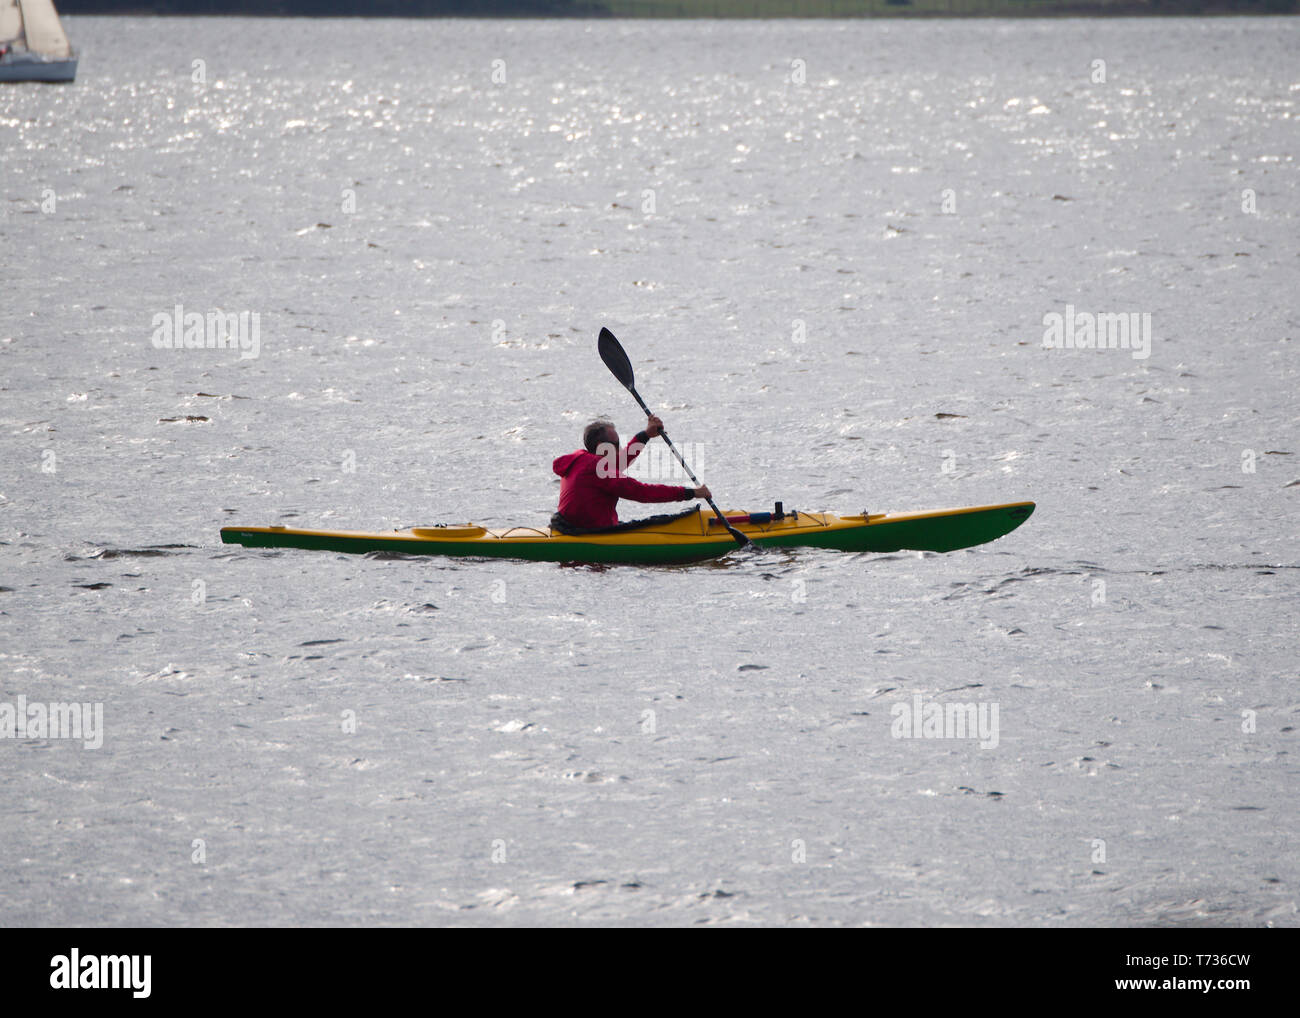 Villa Carlos Paz, Cordoba, Argentine - 2019 : Un homme monte un kayak au lac San Roque, l'une des principales attractions de cette ville touristique. Banque D'Images